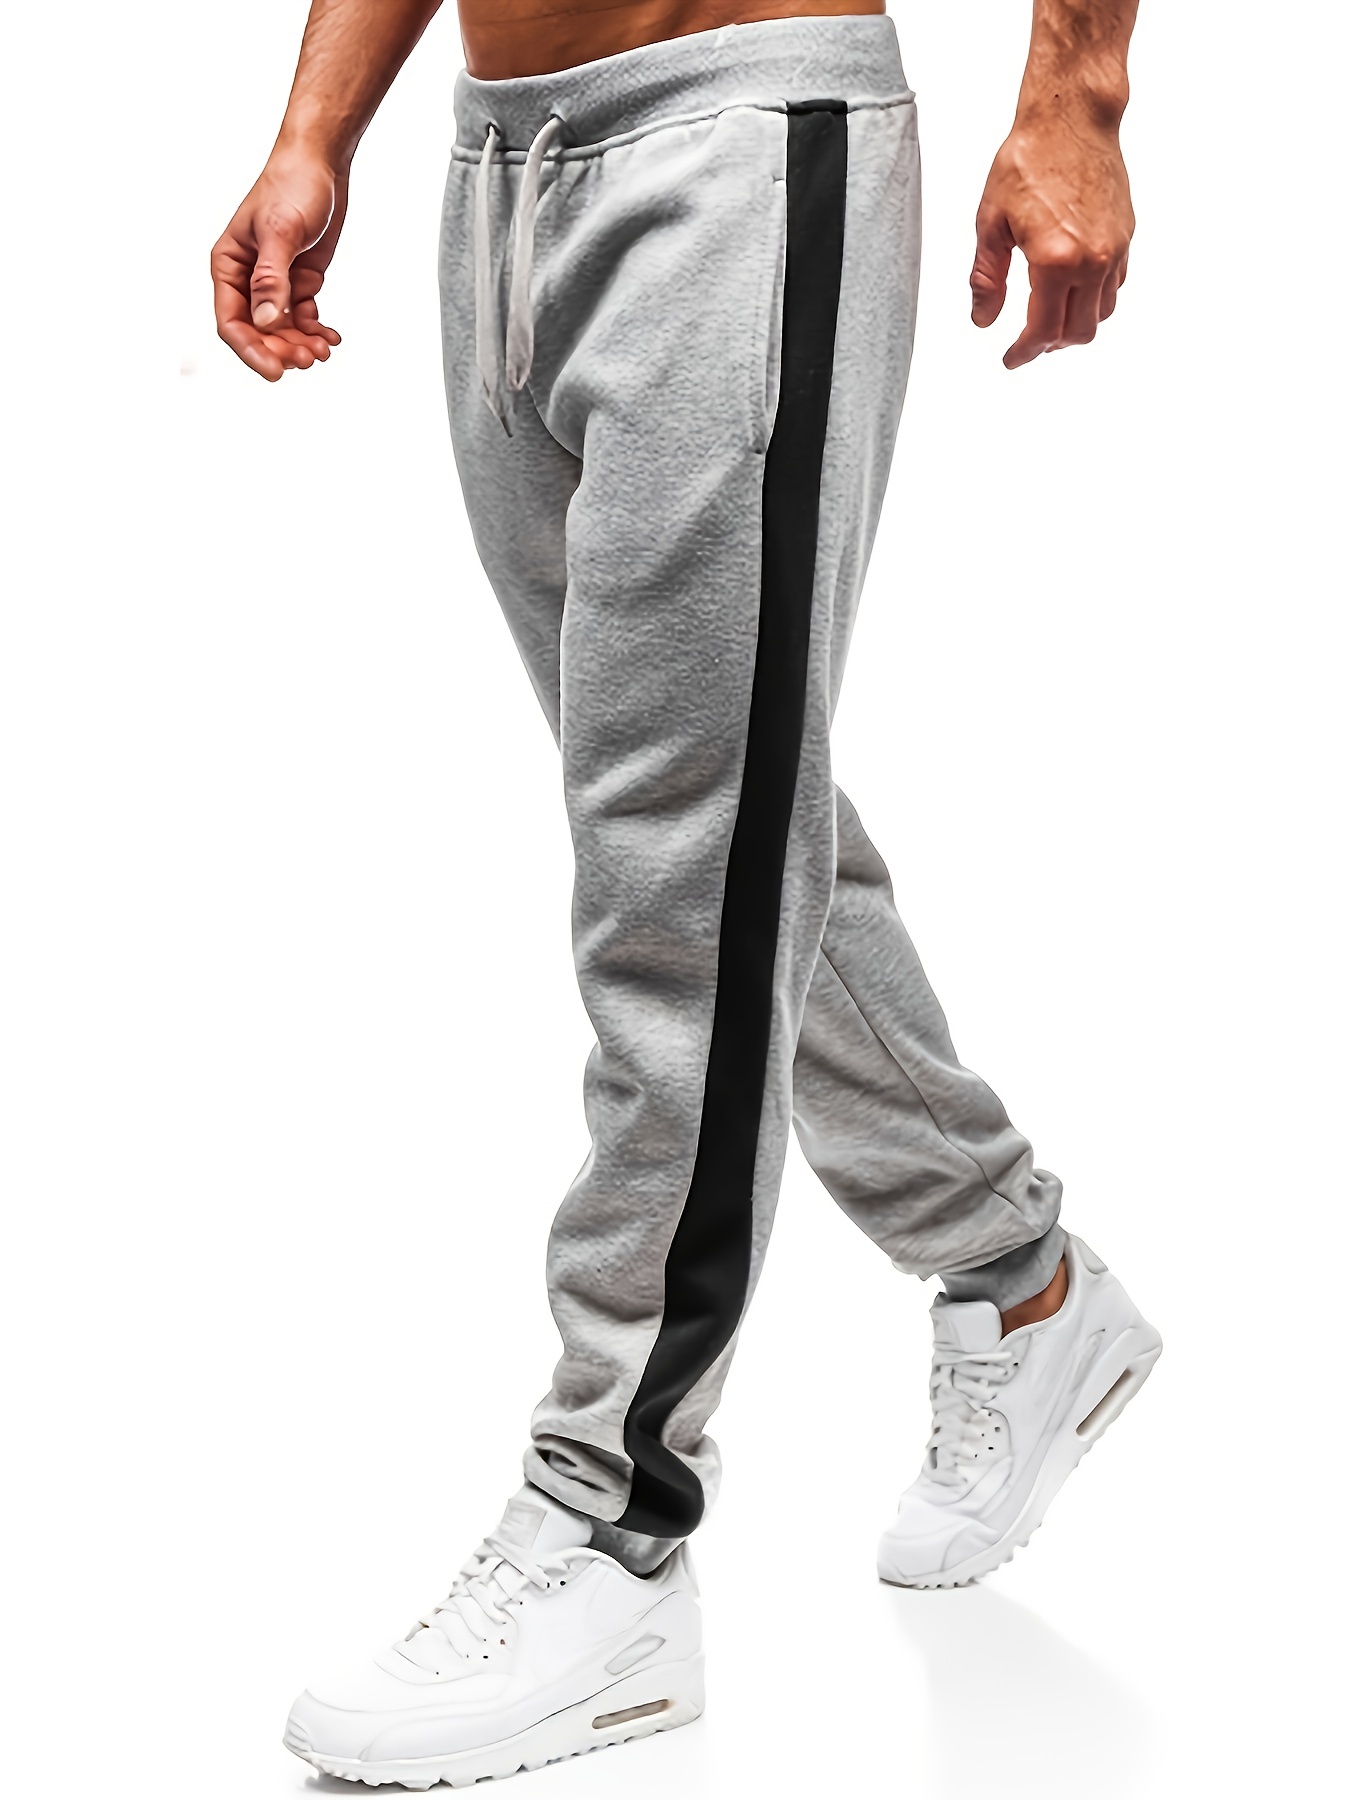 Sweatpants (Regular Fit) - Dark Grey